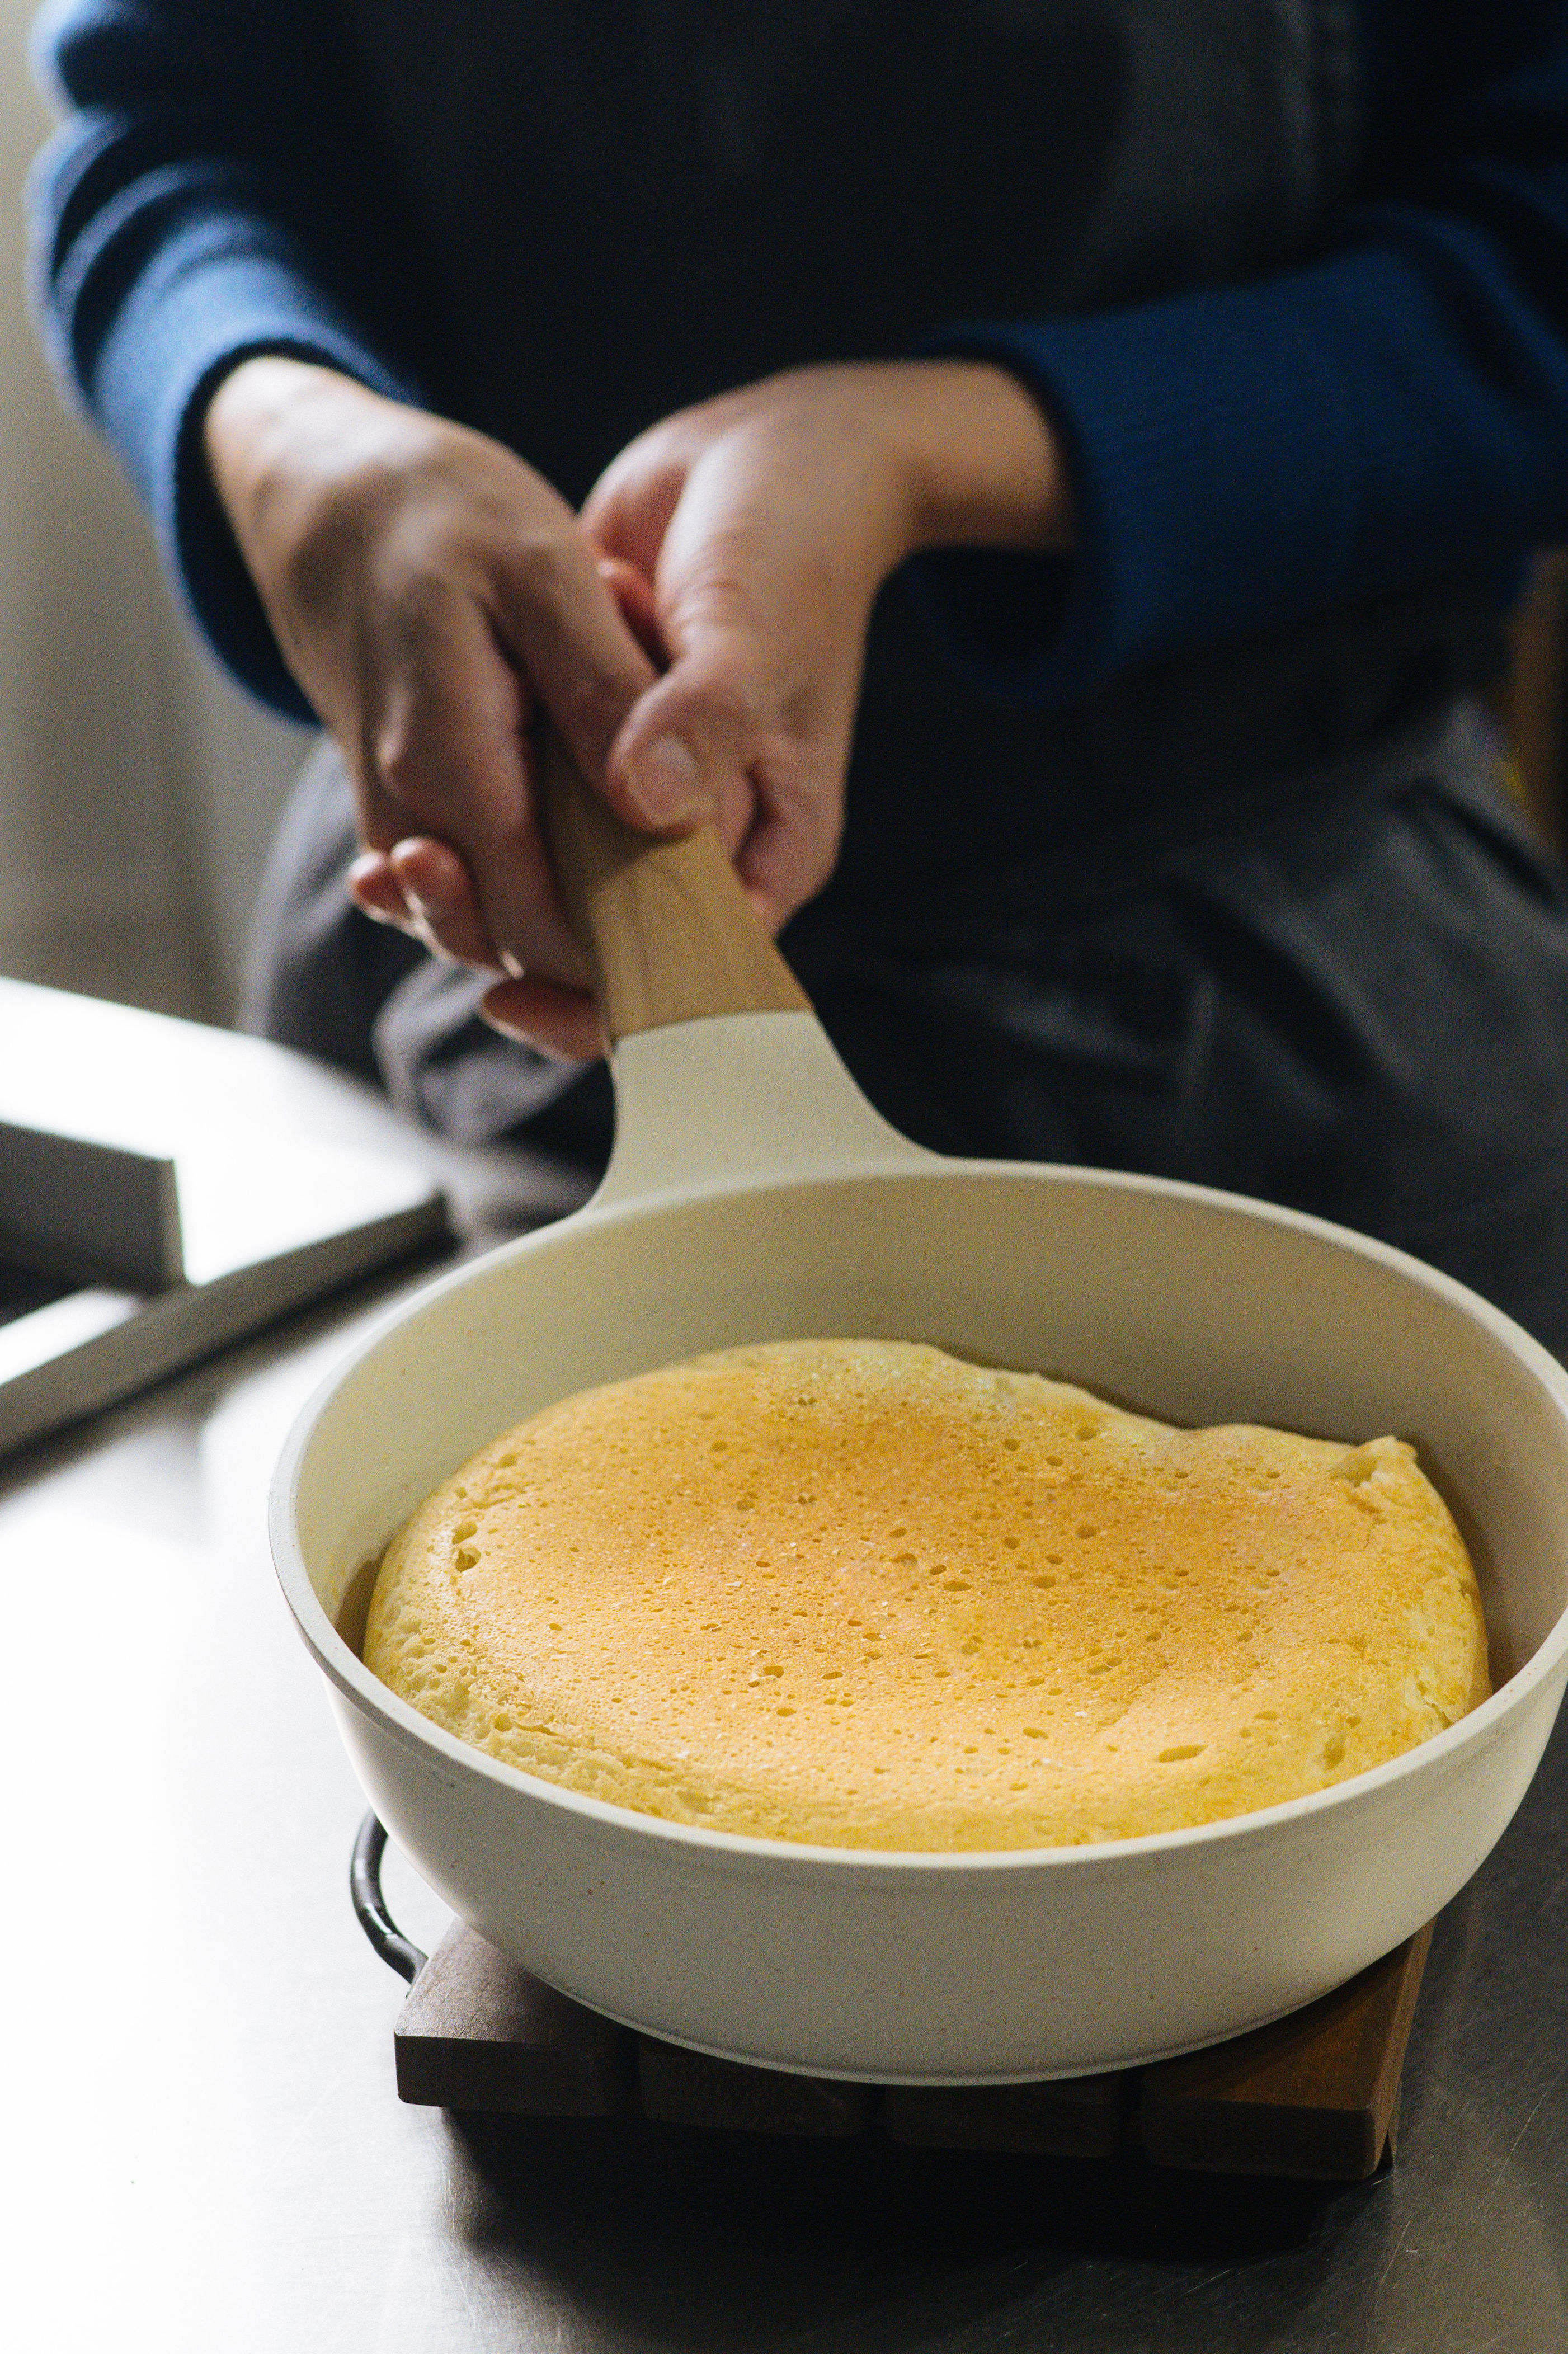 フライパン1つでできる「世界一簡単なパン」のつくり方。ほぼほったらかしで10分で完成